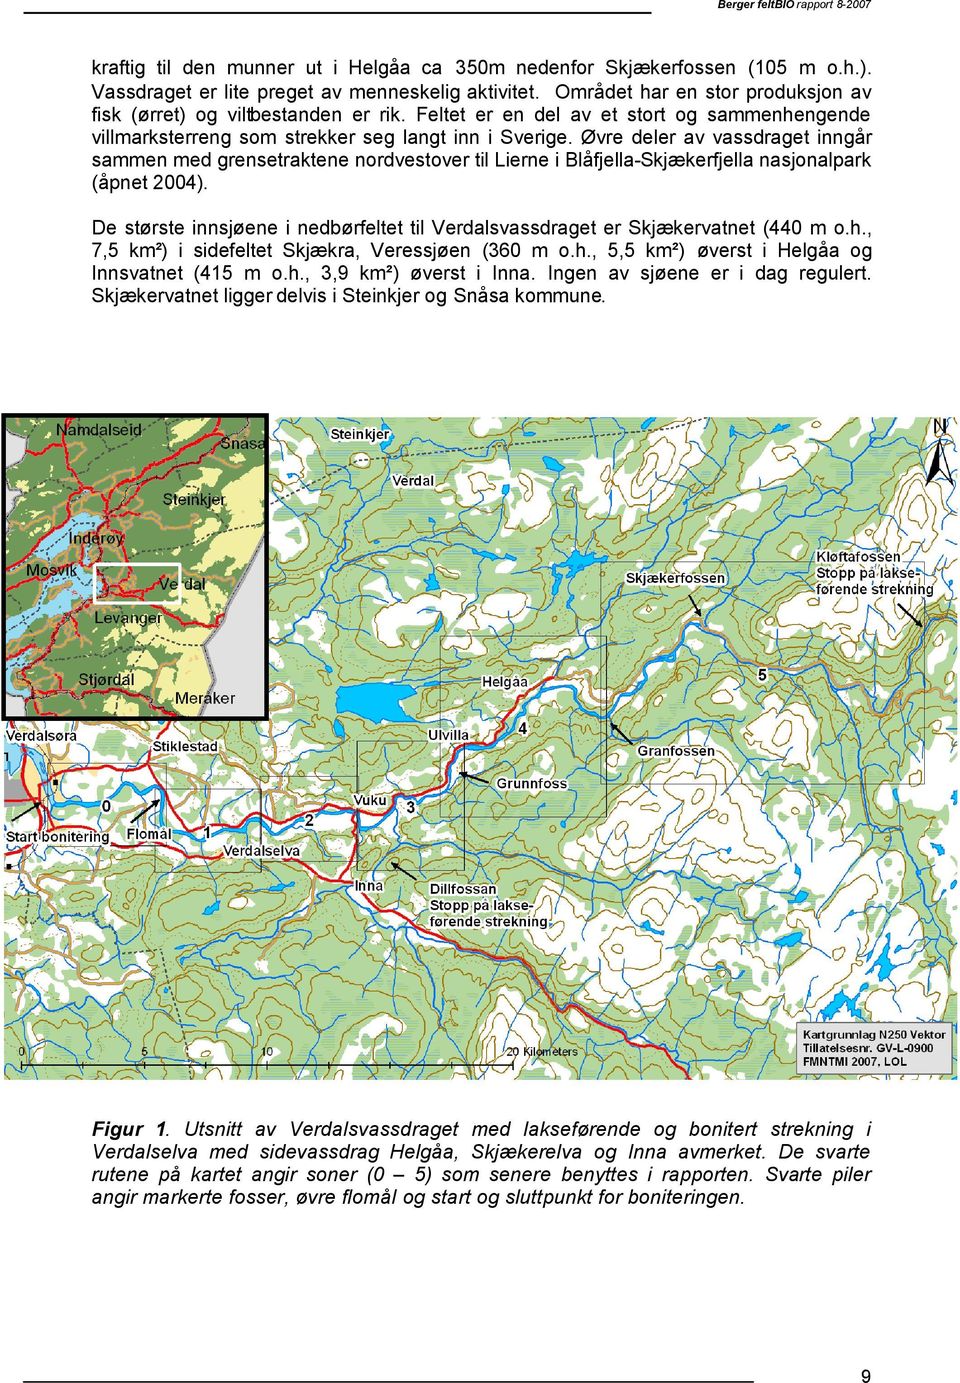 Øvre deler av vassdraget inngår sammen med grensetraktene nordvestover til Lierne i Blåfjella-Skjækerfjella nasjonalpark (åpnet 4).